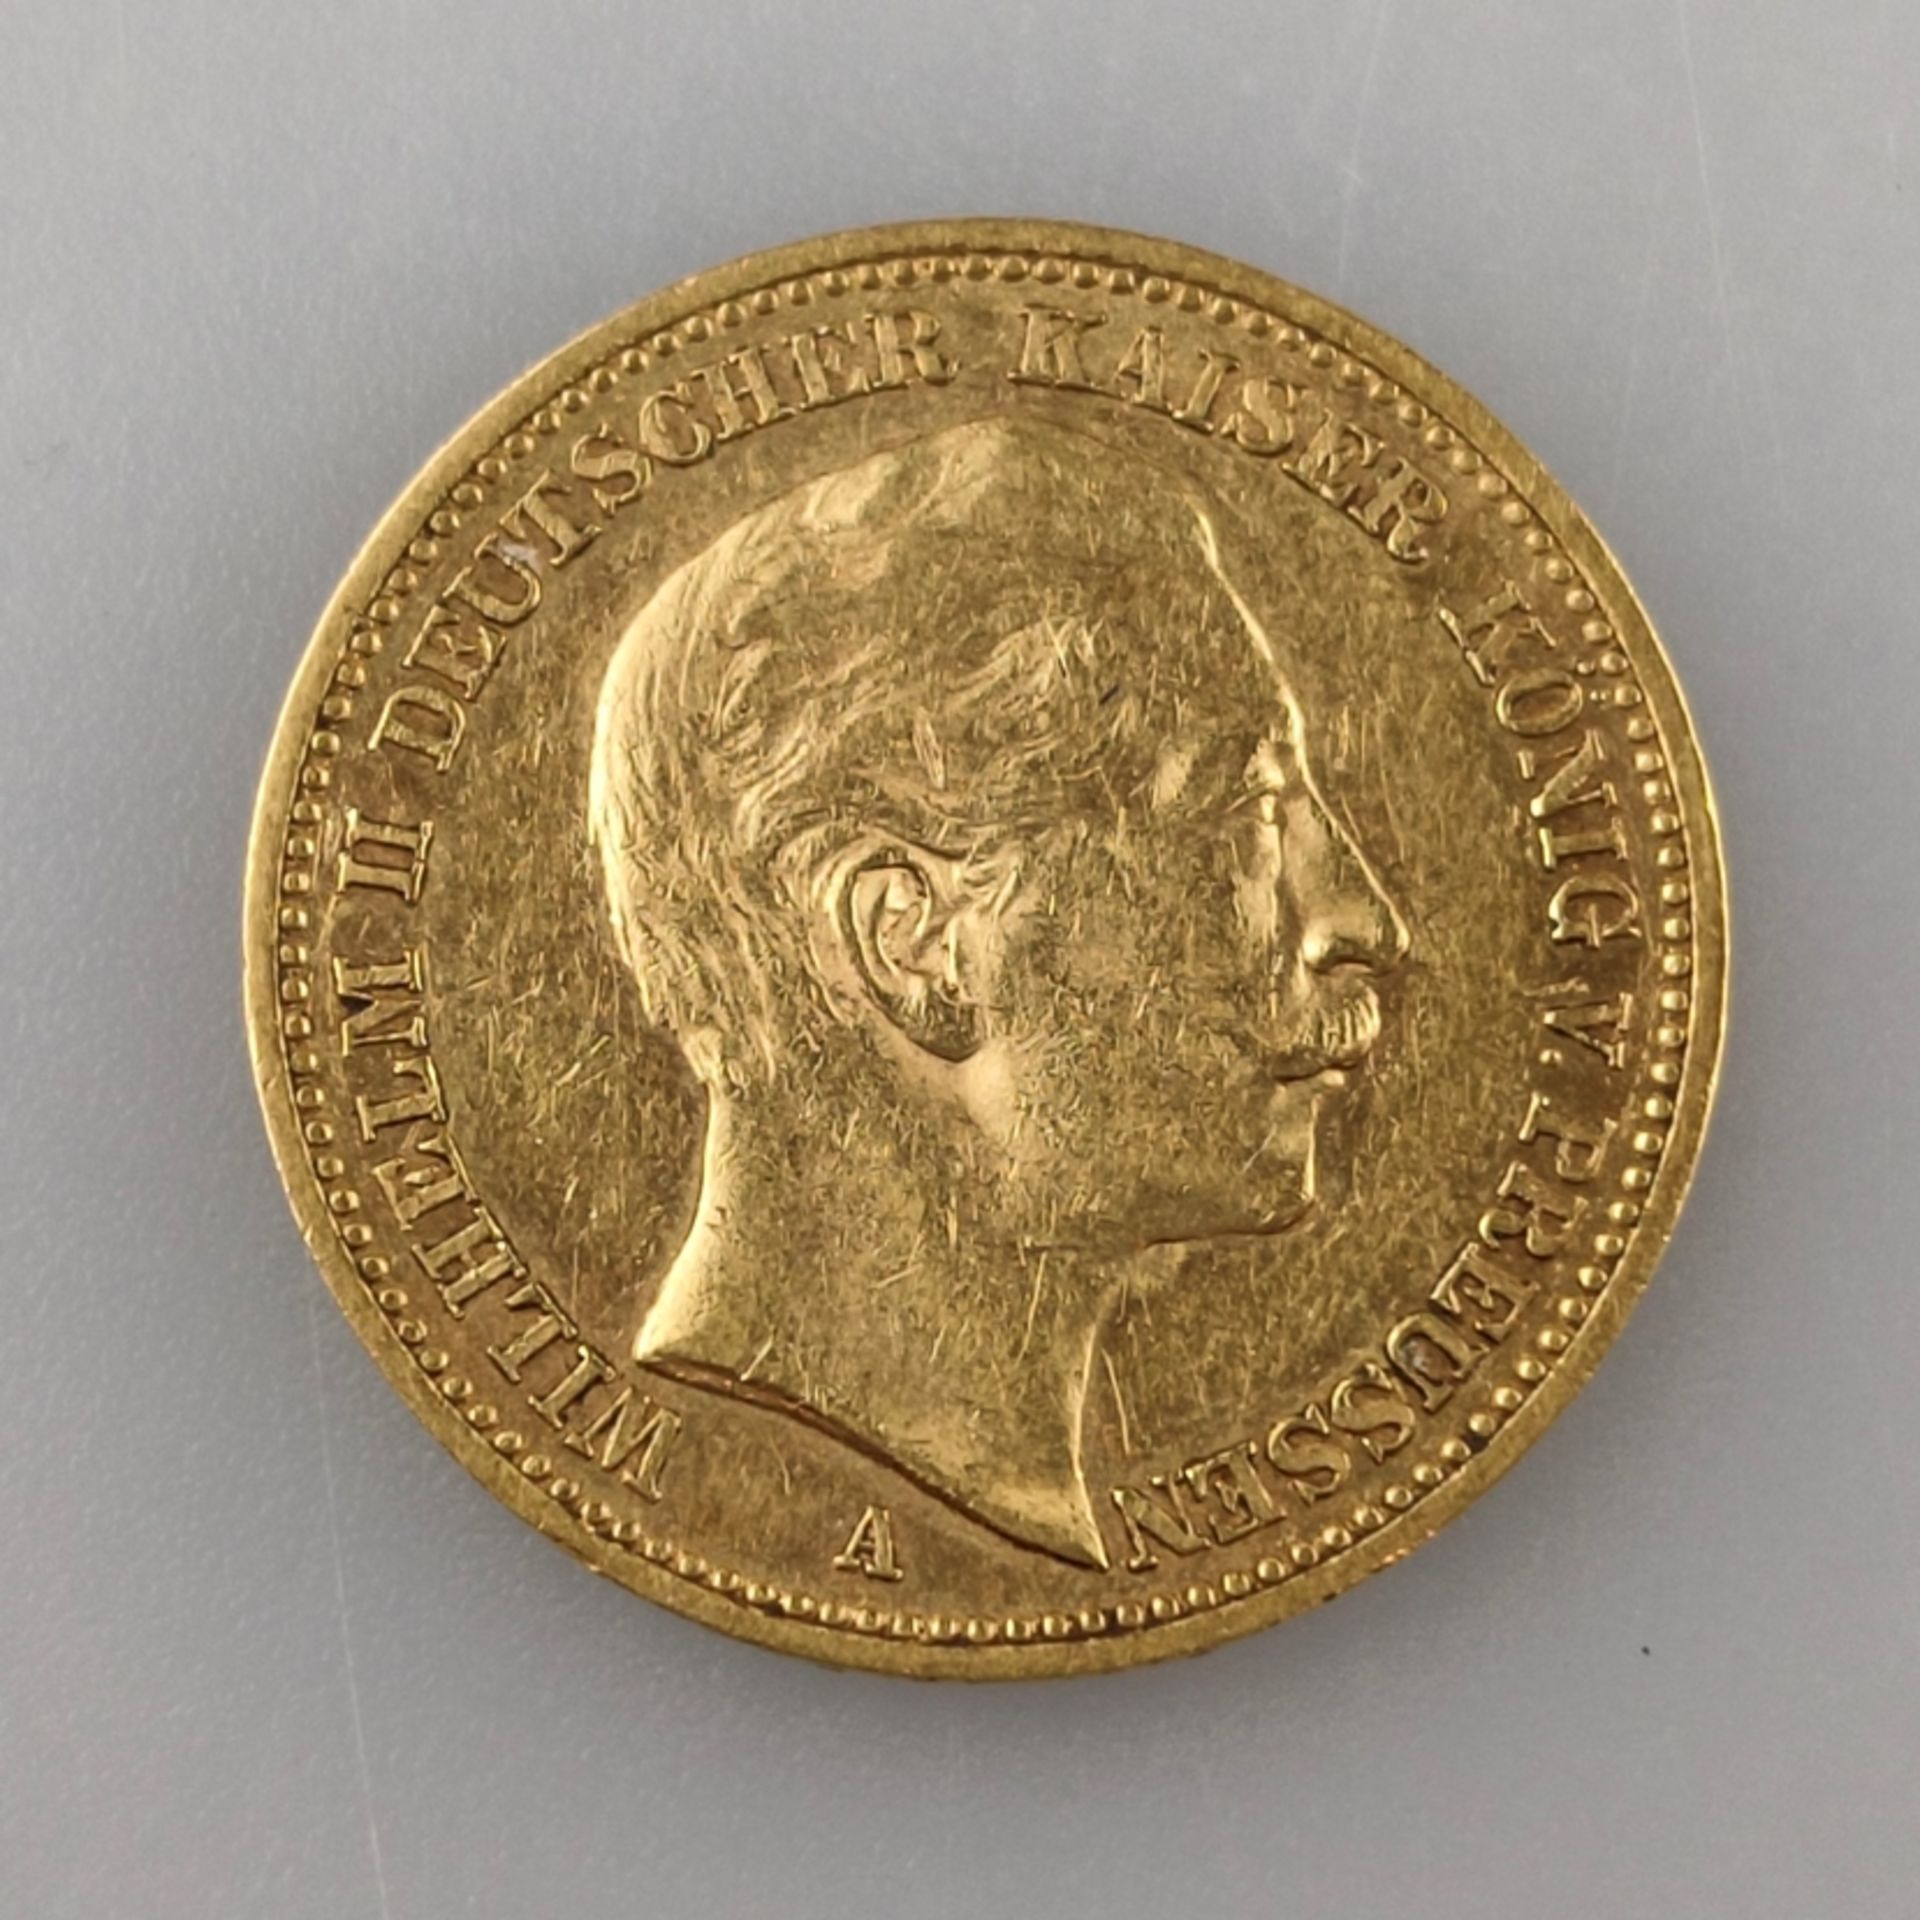 Goldmünze 20 Mark 1889 - Deutsches Kaiserreich, Wilhelm II Deutscher Kaiser König v. Preußen, 900/0